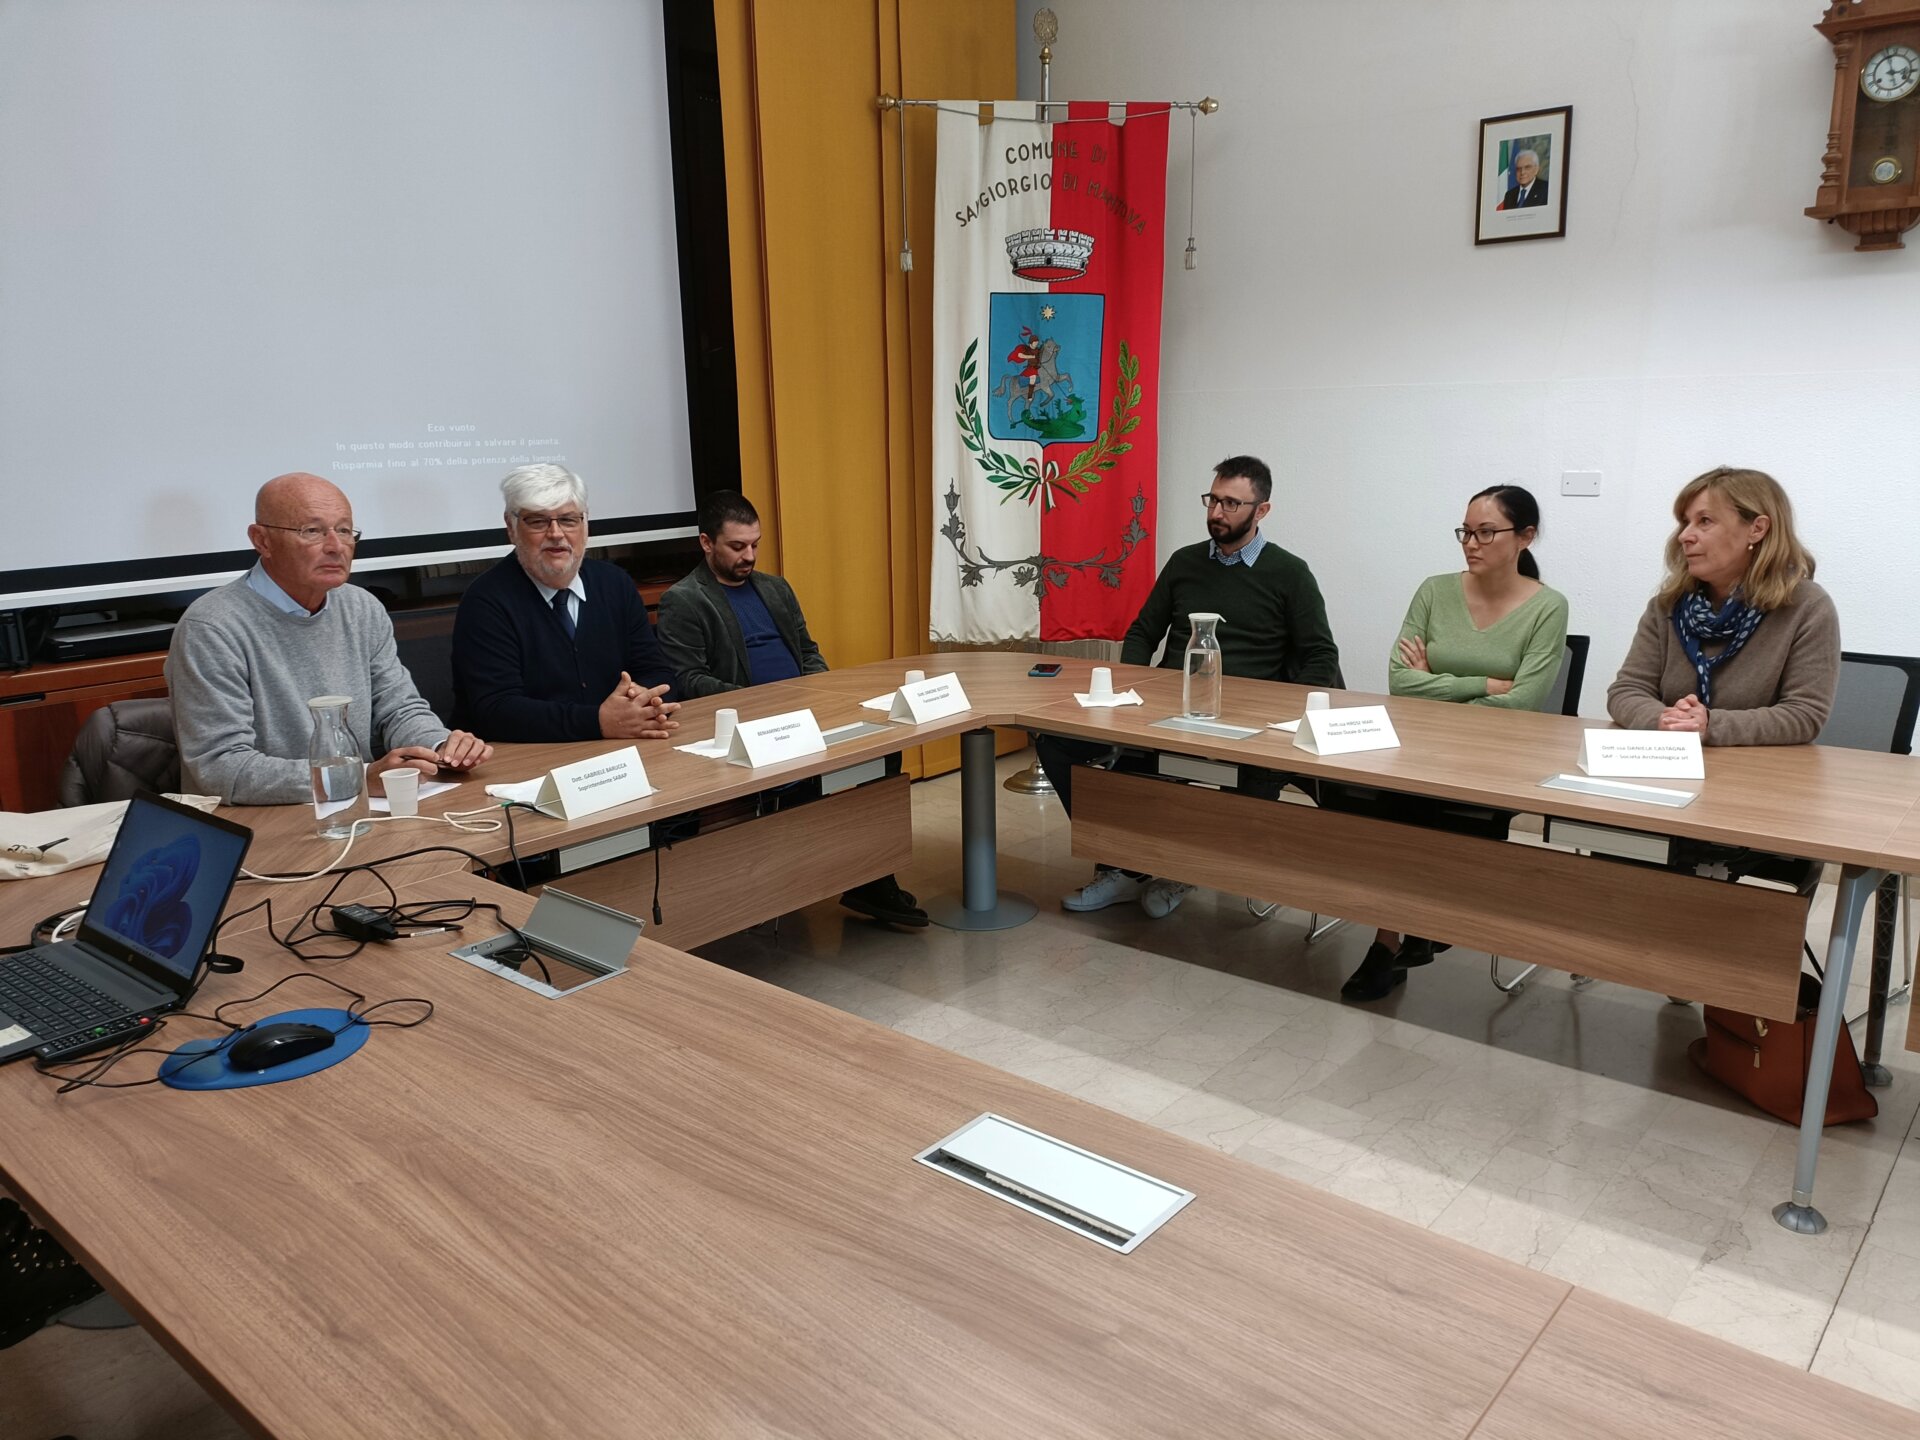 Un momento della presentazione dei ritrovamenti in municipio a San GIorgio Bigarello